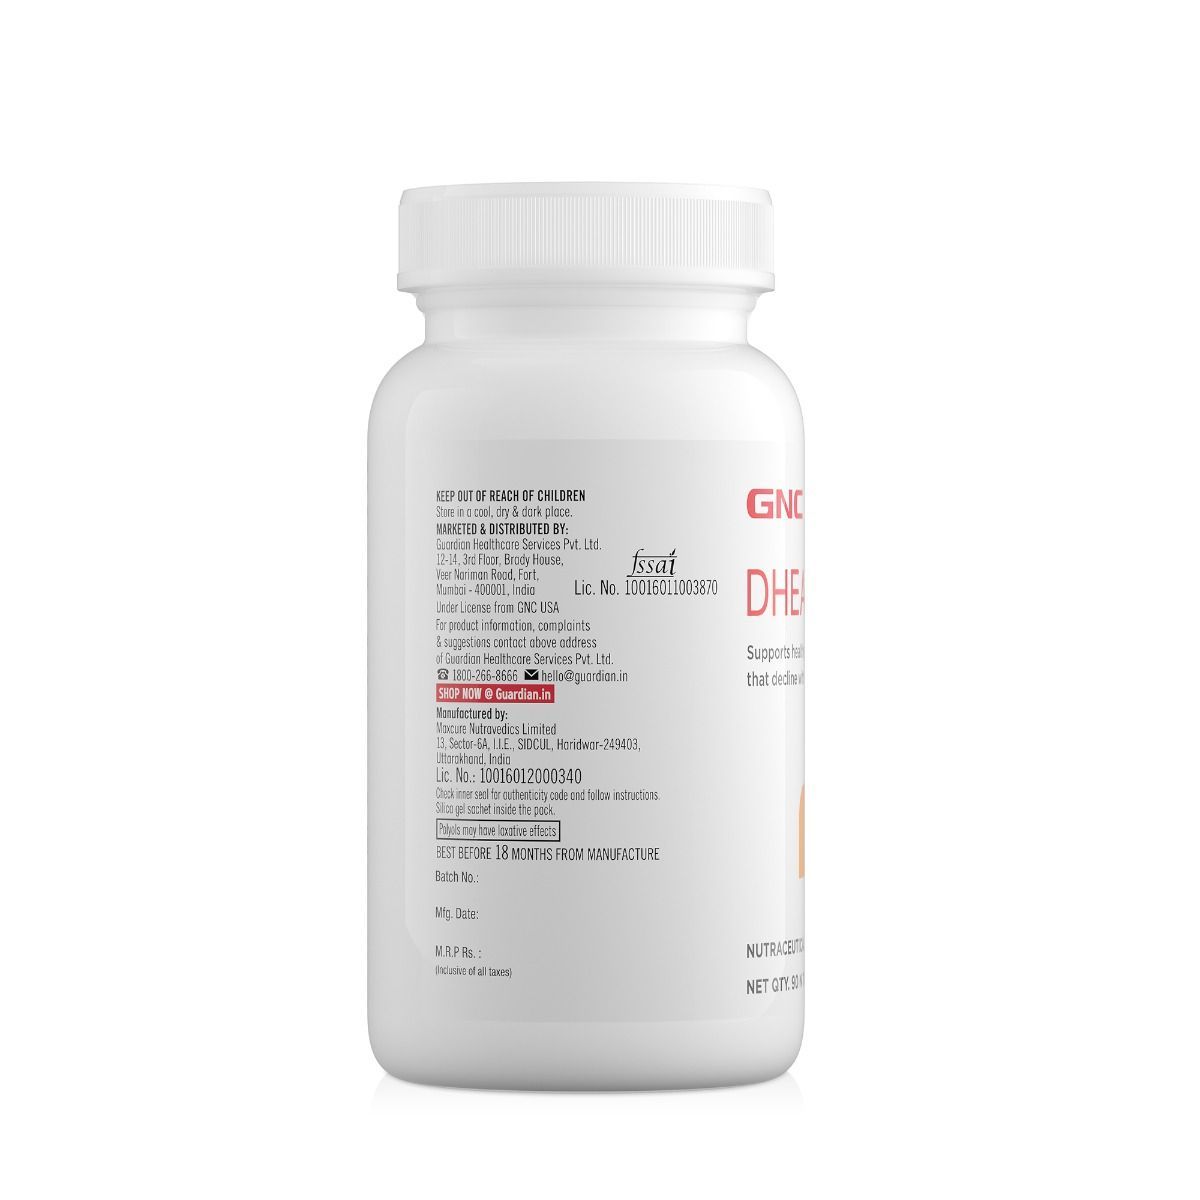 GNC DHEA 50 mg